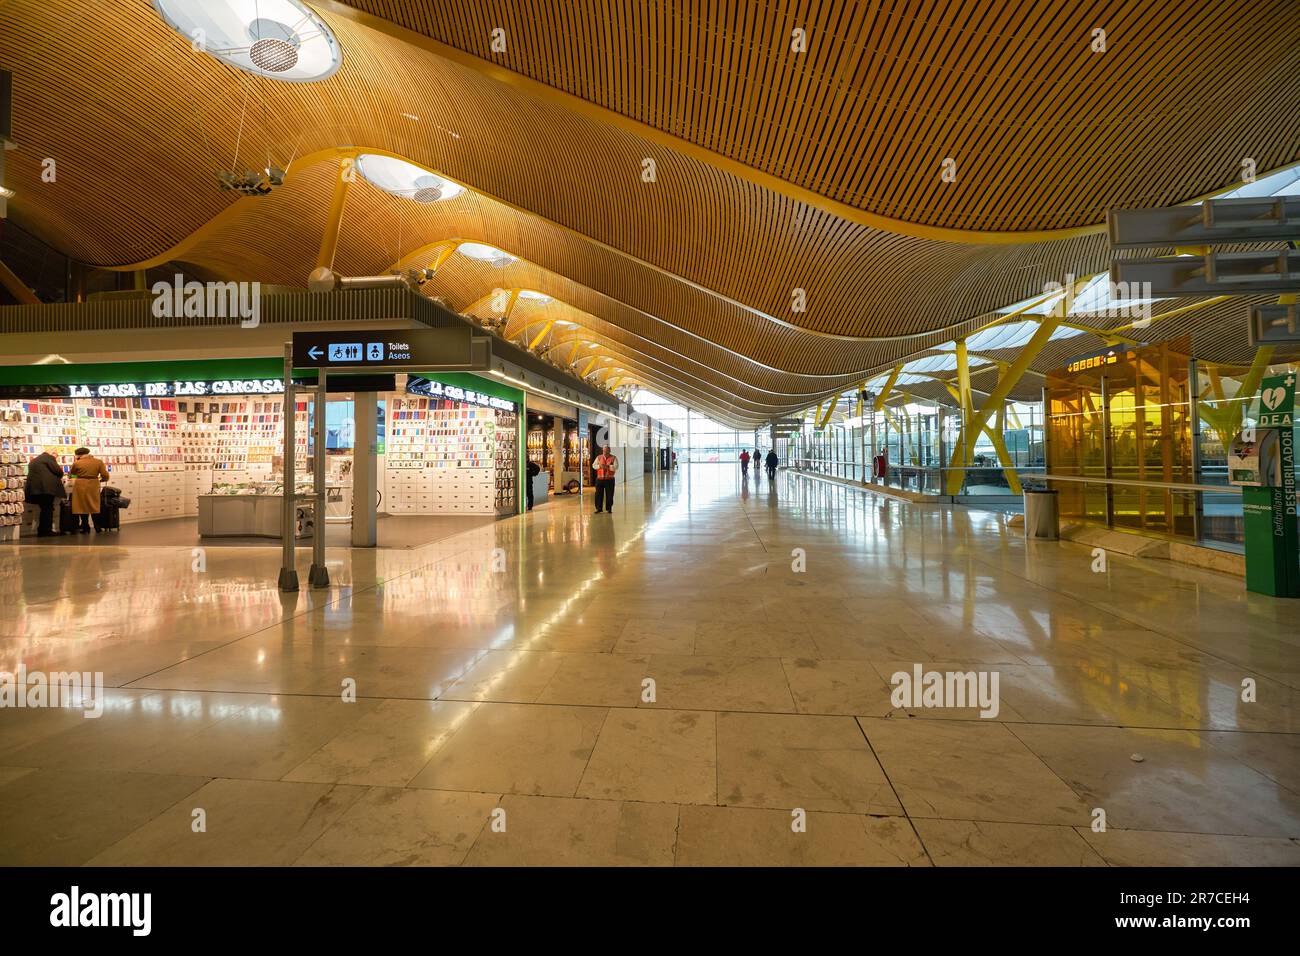 MADRID, SPANIEN - CIRCA JANUAR 2020: Innenaufnahme des Flughafens Madrid-Barajas, des Hauptflughafens von Madrid. Stockfoto